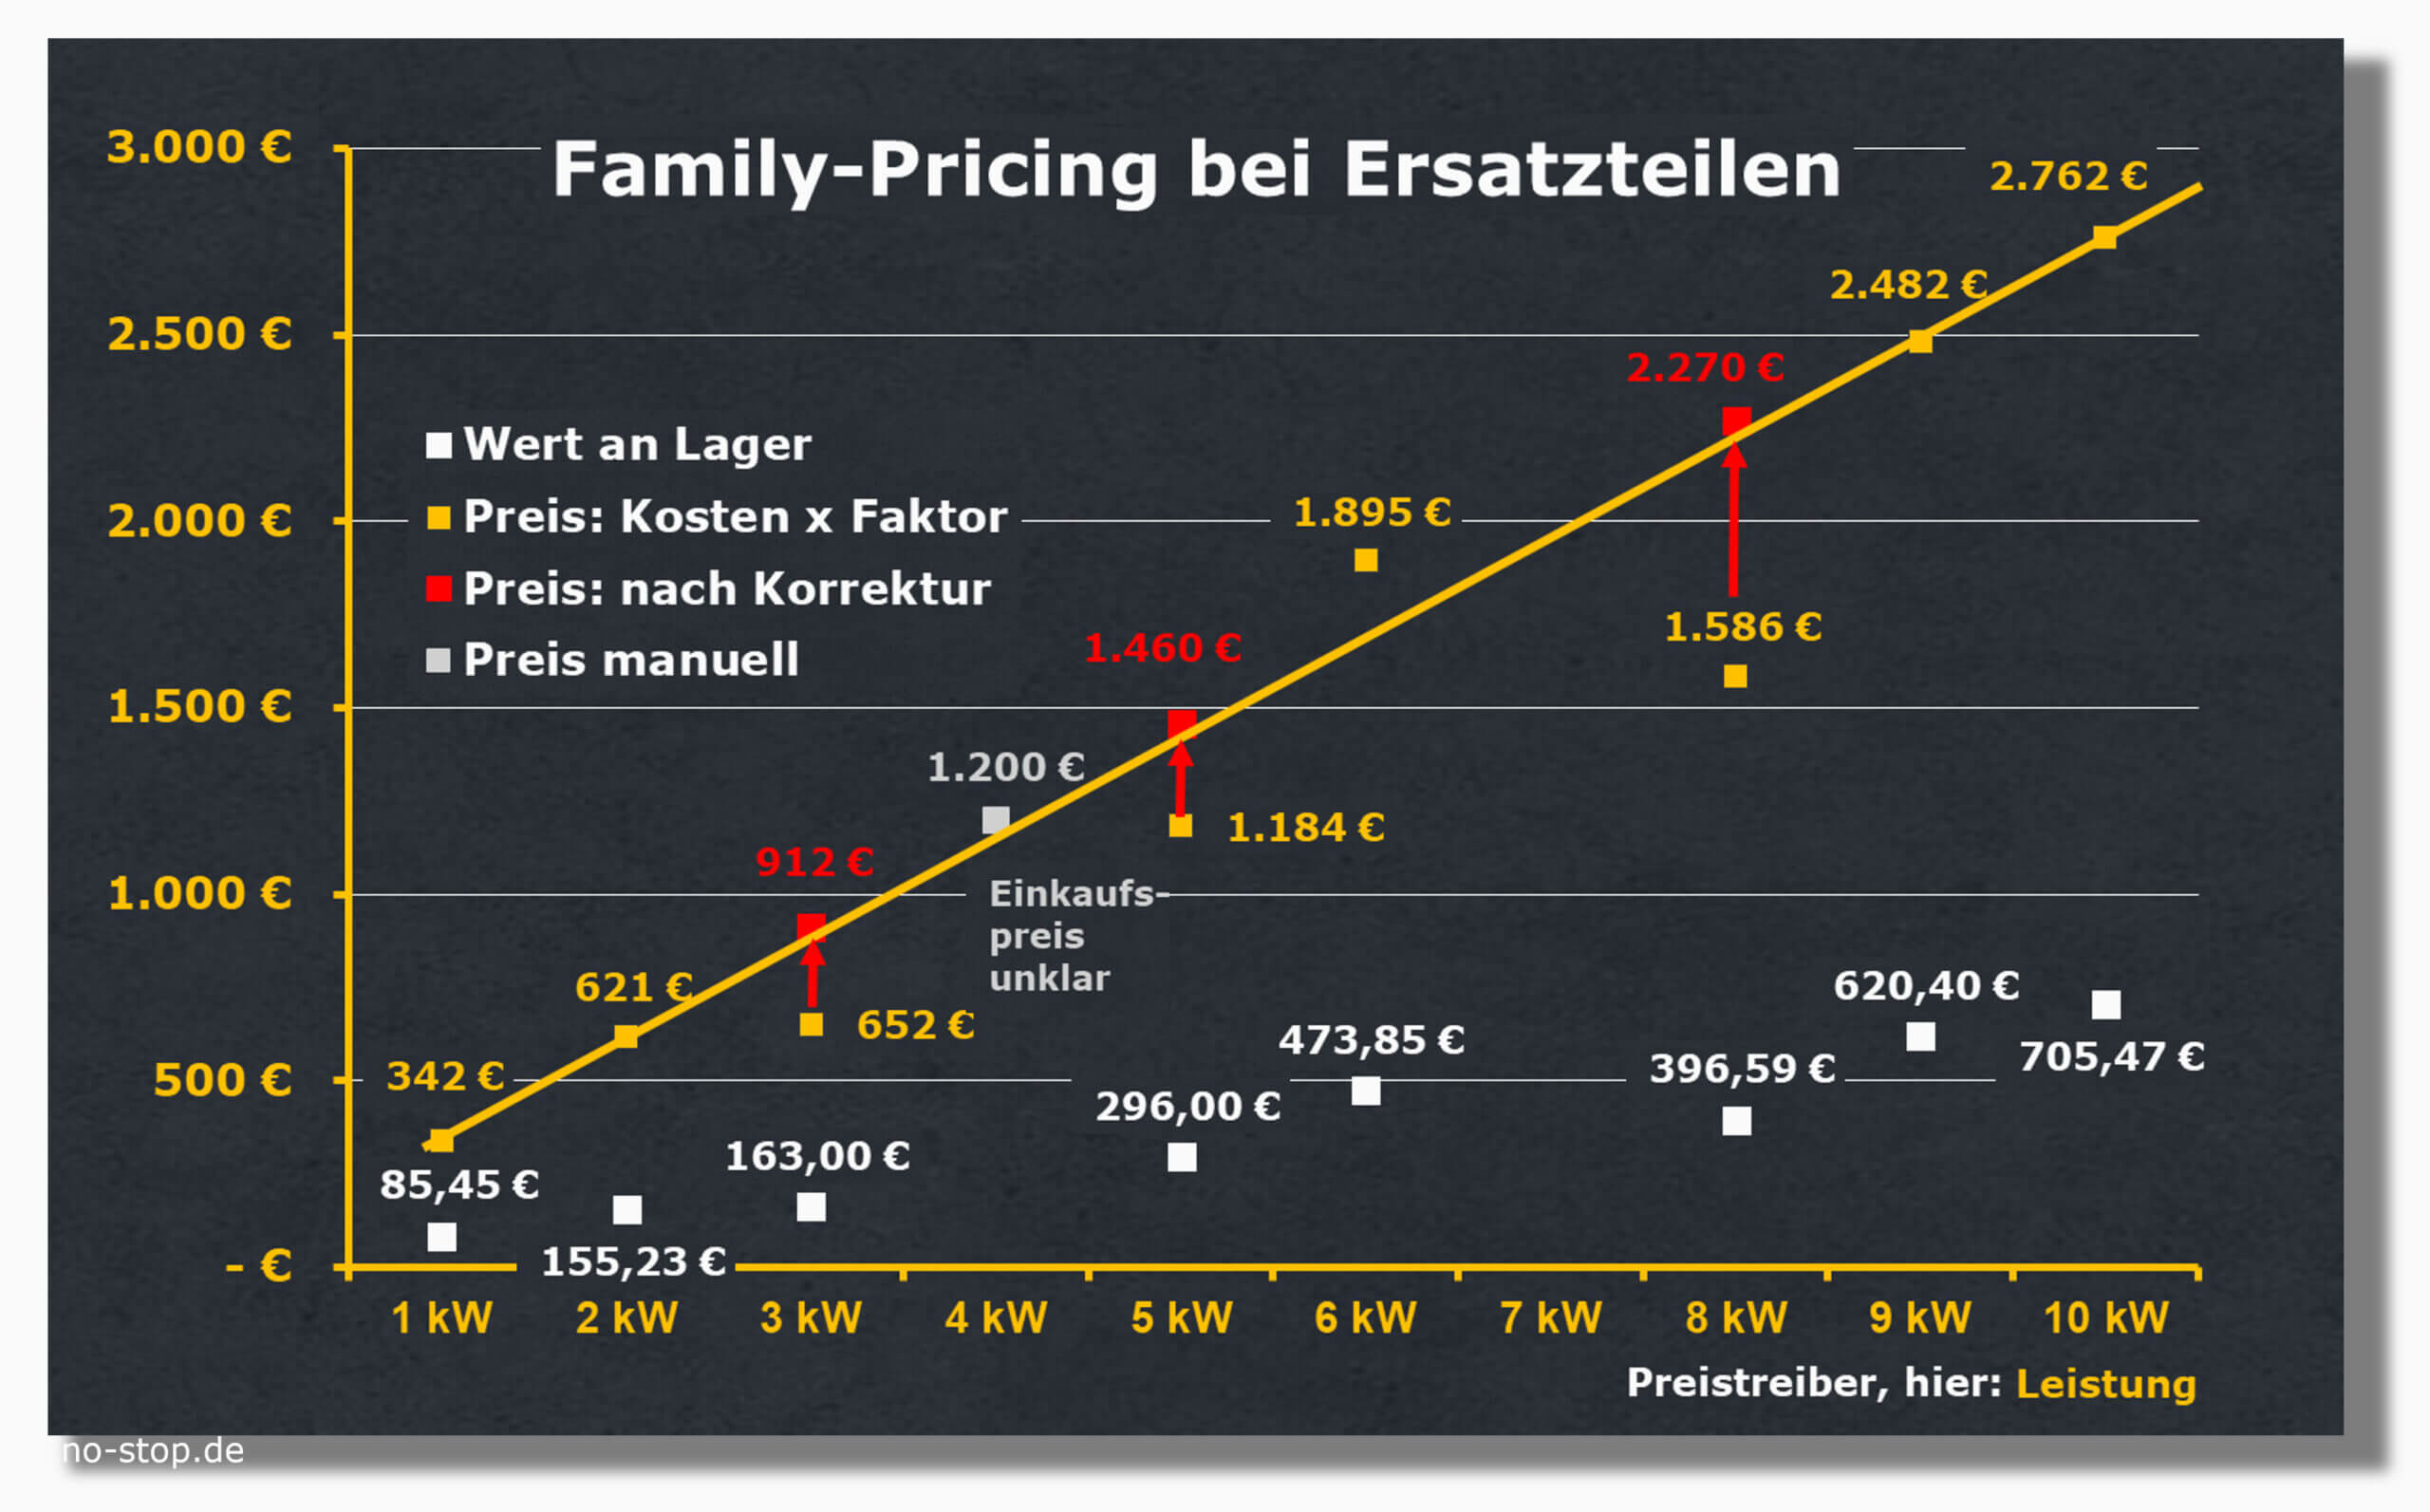 Family Pricing bei Ersatzteilen